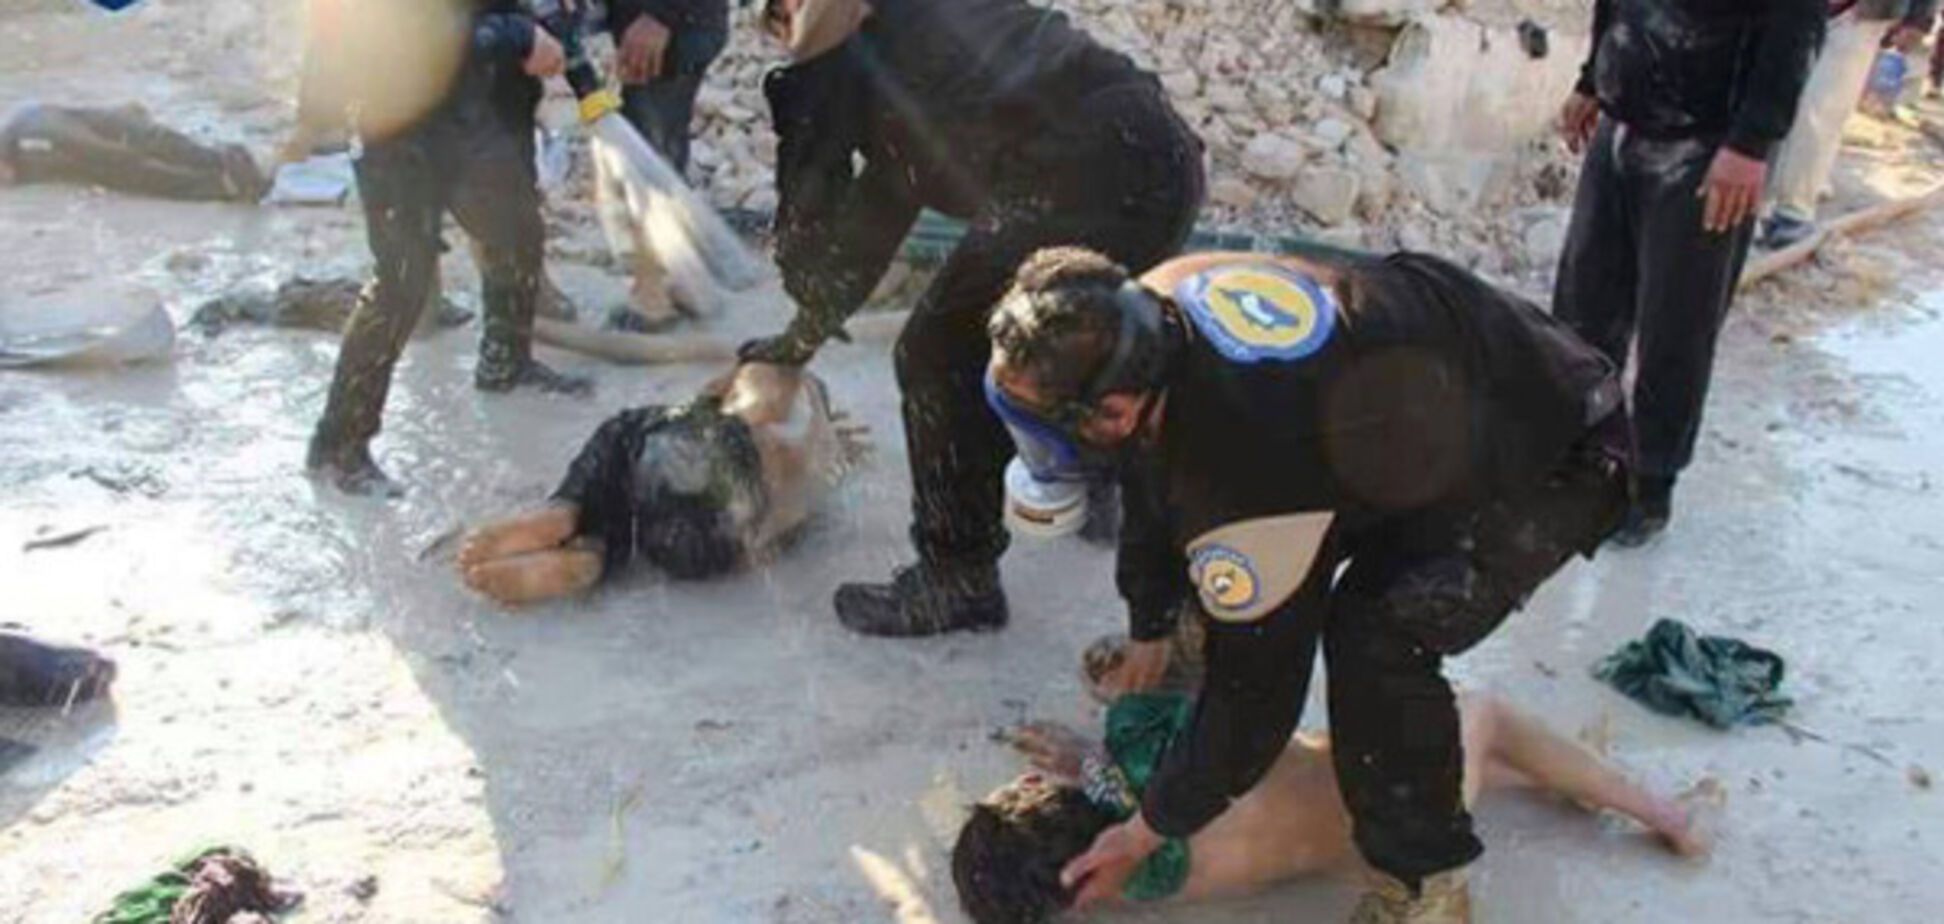 Войска Асада атаковали оппозицию химическим оружием: опубликованы фото и видео 18+